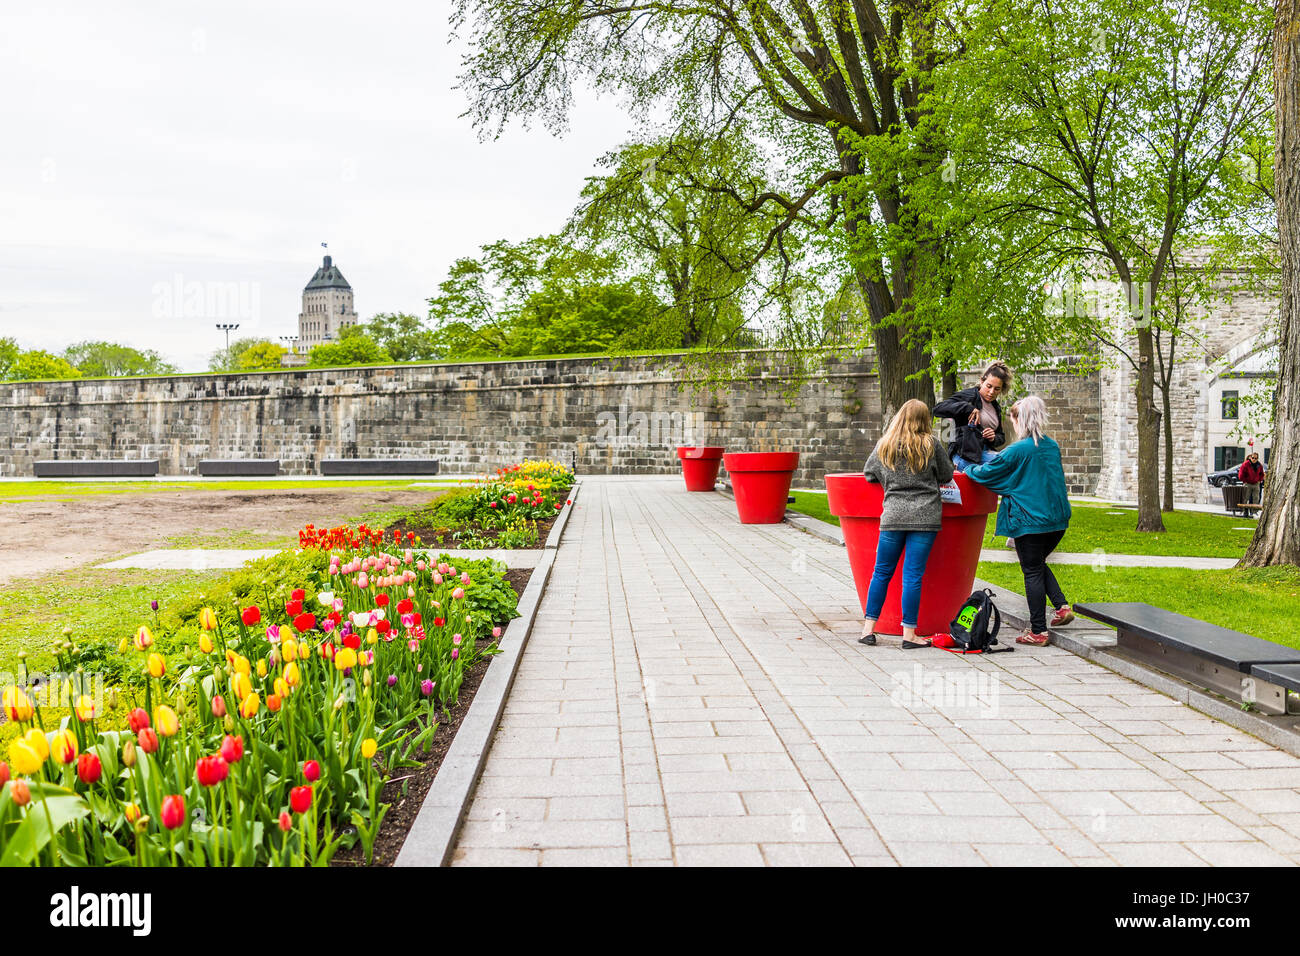 La città di Quebec, Canada - 29 Maggio 2017: erba verde pianura campi nel parco con fortificazioni muro di pietra e la gente seduta sui grandi vasi di fiori Foto Stock